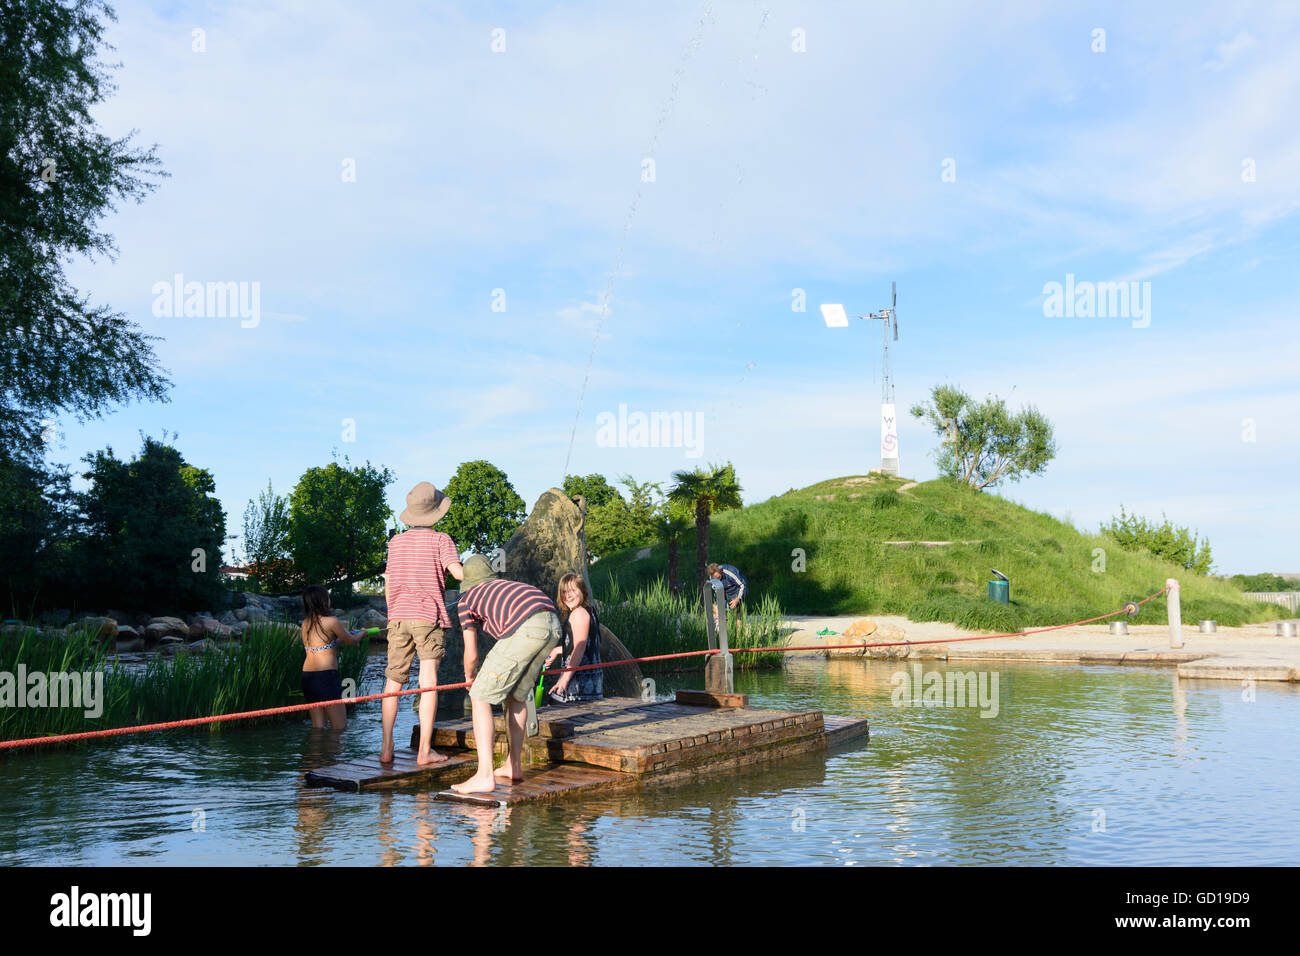 Wien, Vienna: Bambini su un parco acquatico sull'Isola del Danubio, Austria, Wien, 22. Foto Stock